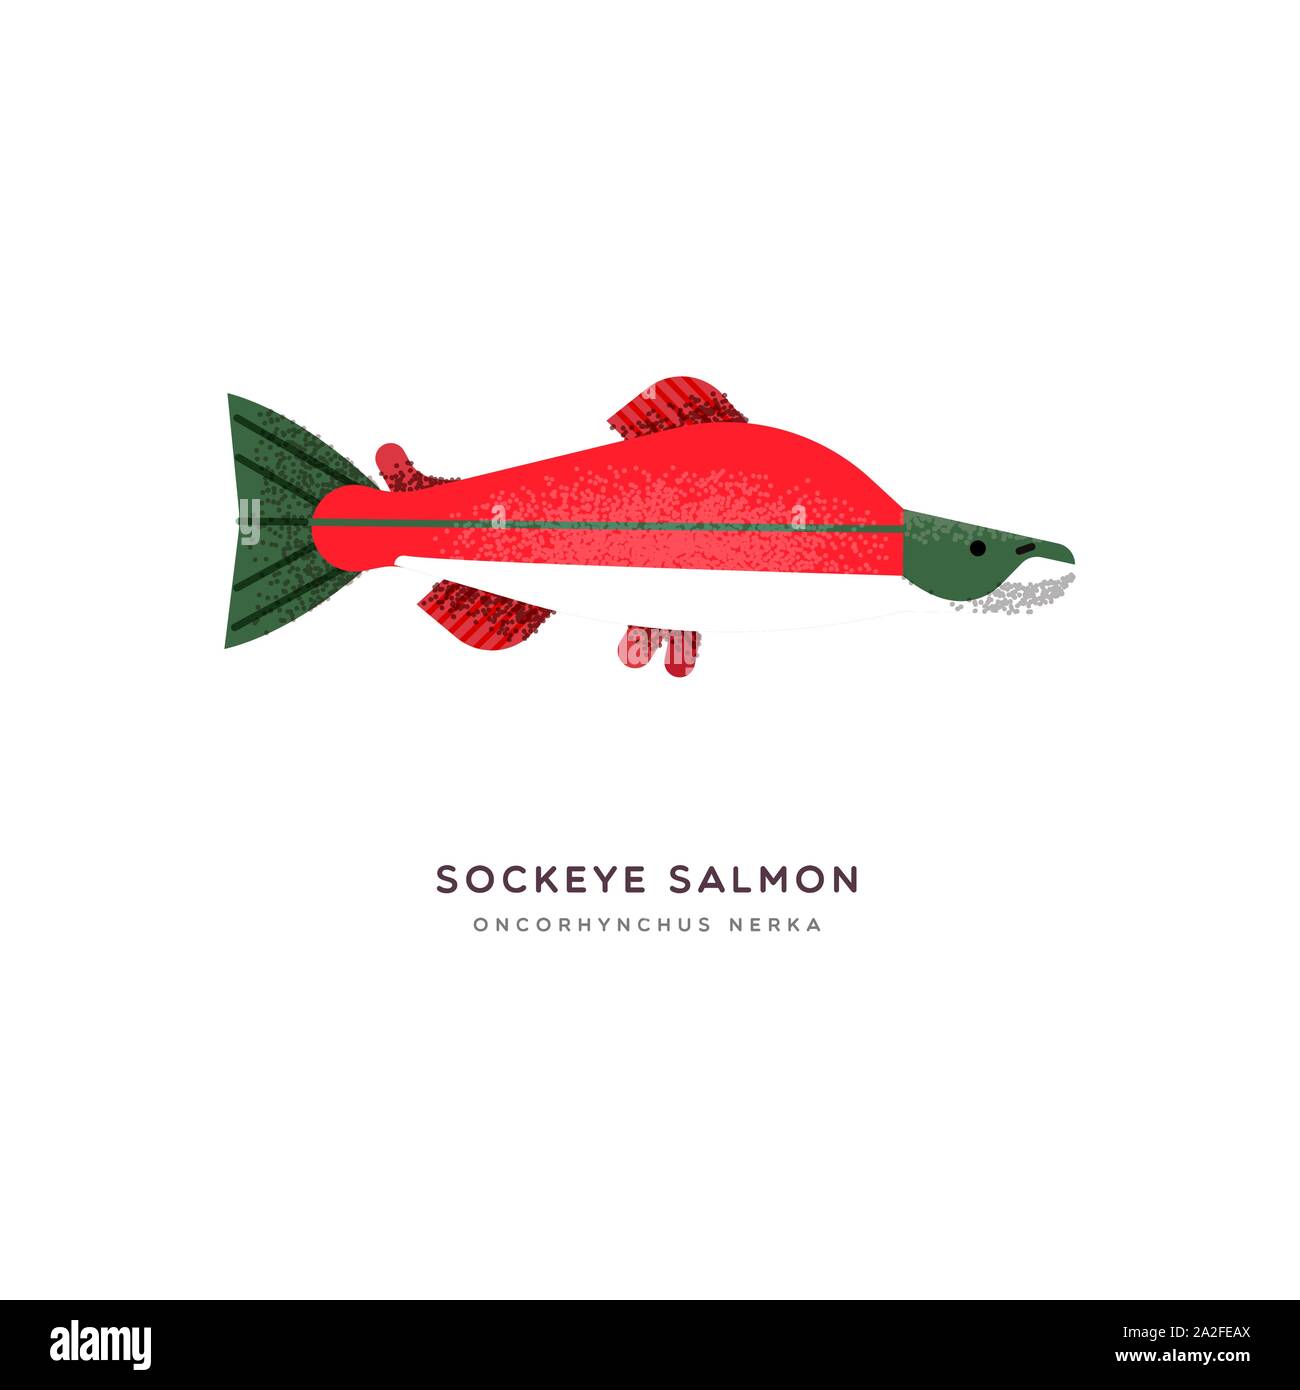 Il Salmone Sockeye illustrazione animale di pesce rosso isolato su sfondo bianco. Istruzione di progettazione della fauna selvatica con specie di fauna nome etichetta. Illustrazione Vettoriale